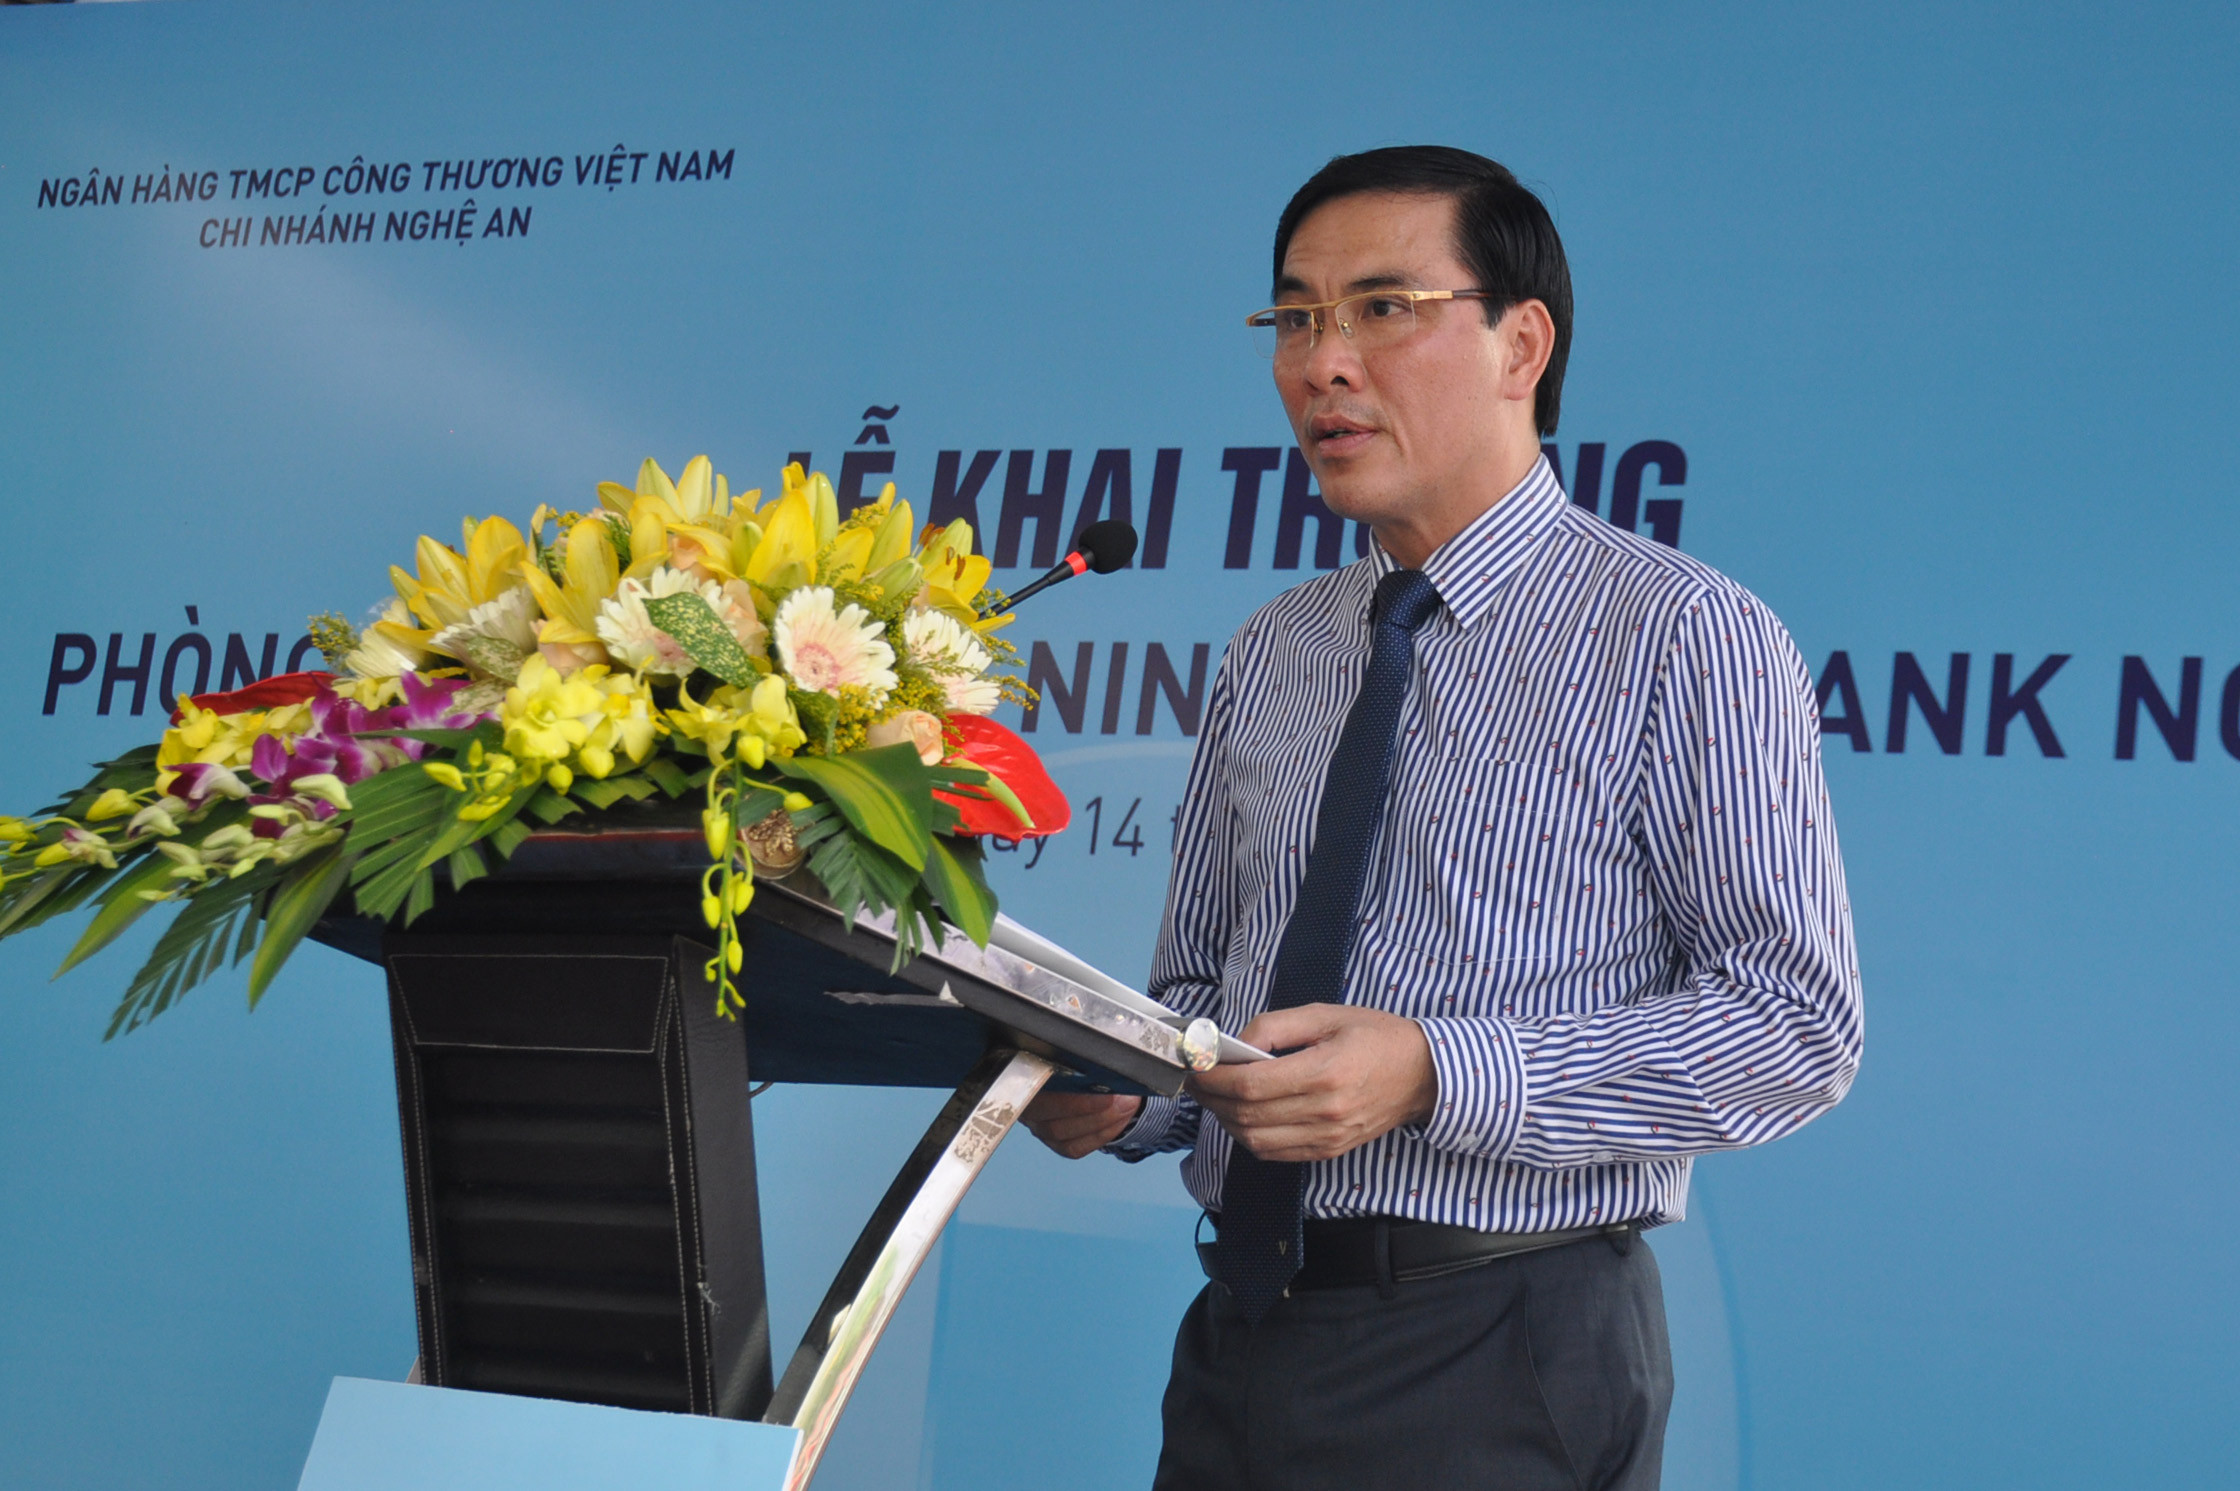 Ông Bùi Xuân Đông - Giám đốc Vietinbank Nghệ An phát biểu tại lễ khai trương. Ảnh: Thu Huyền